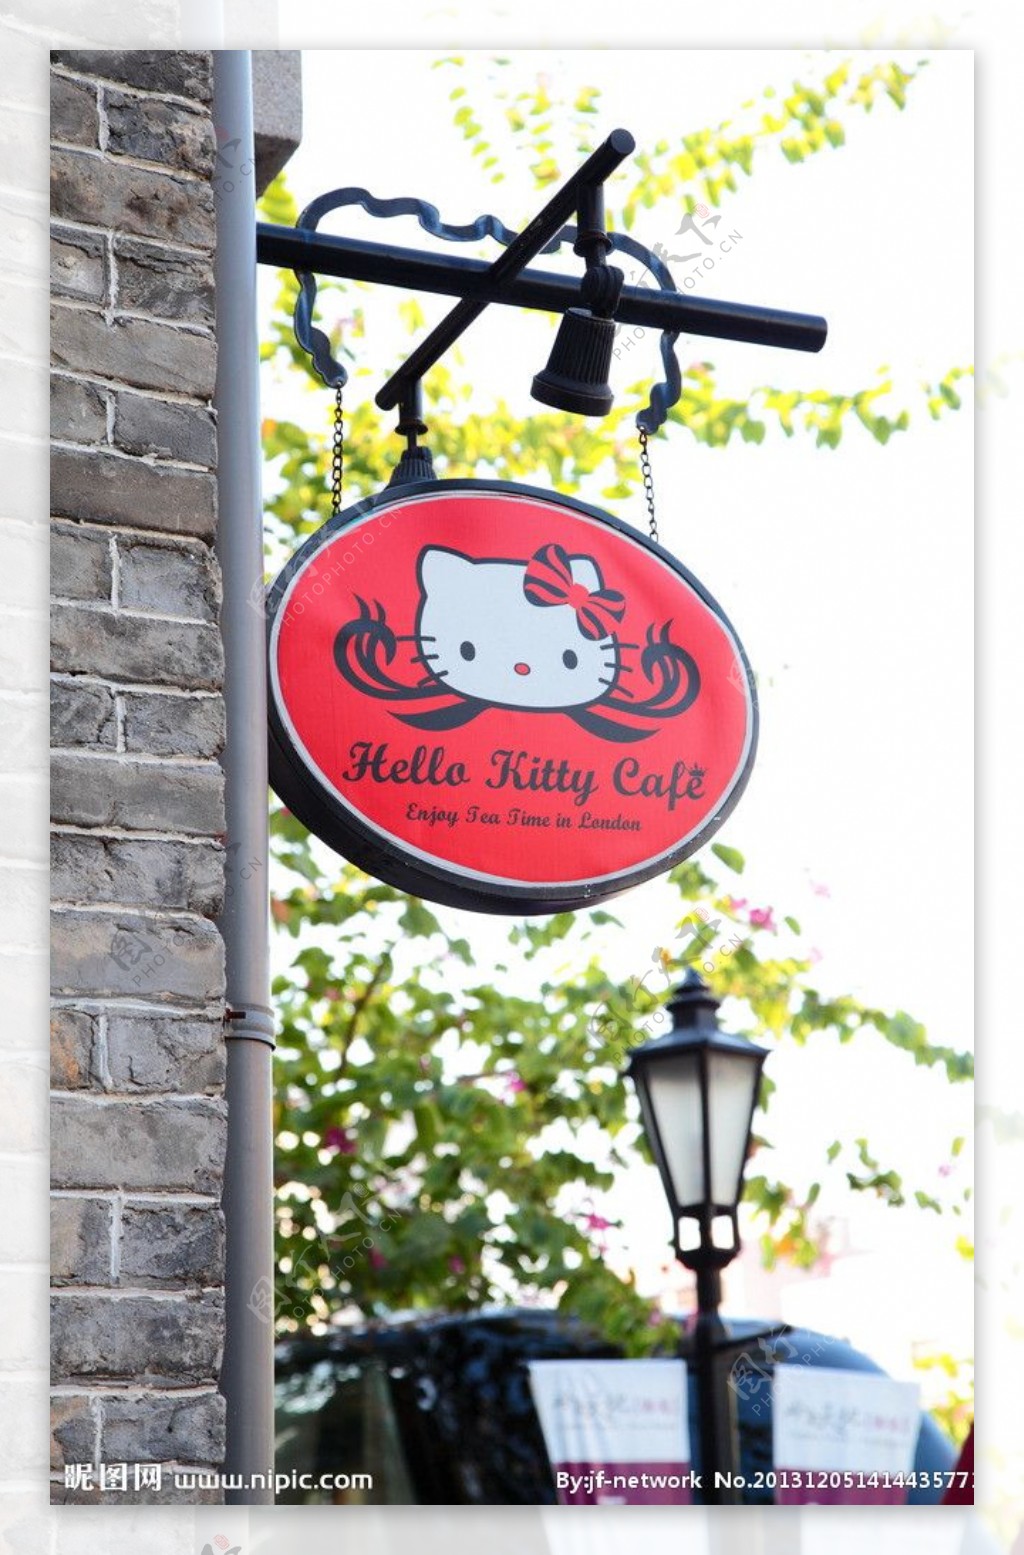 吉蒂猫主题餐厅图片